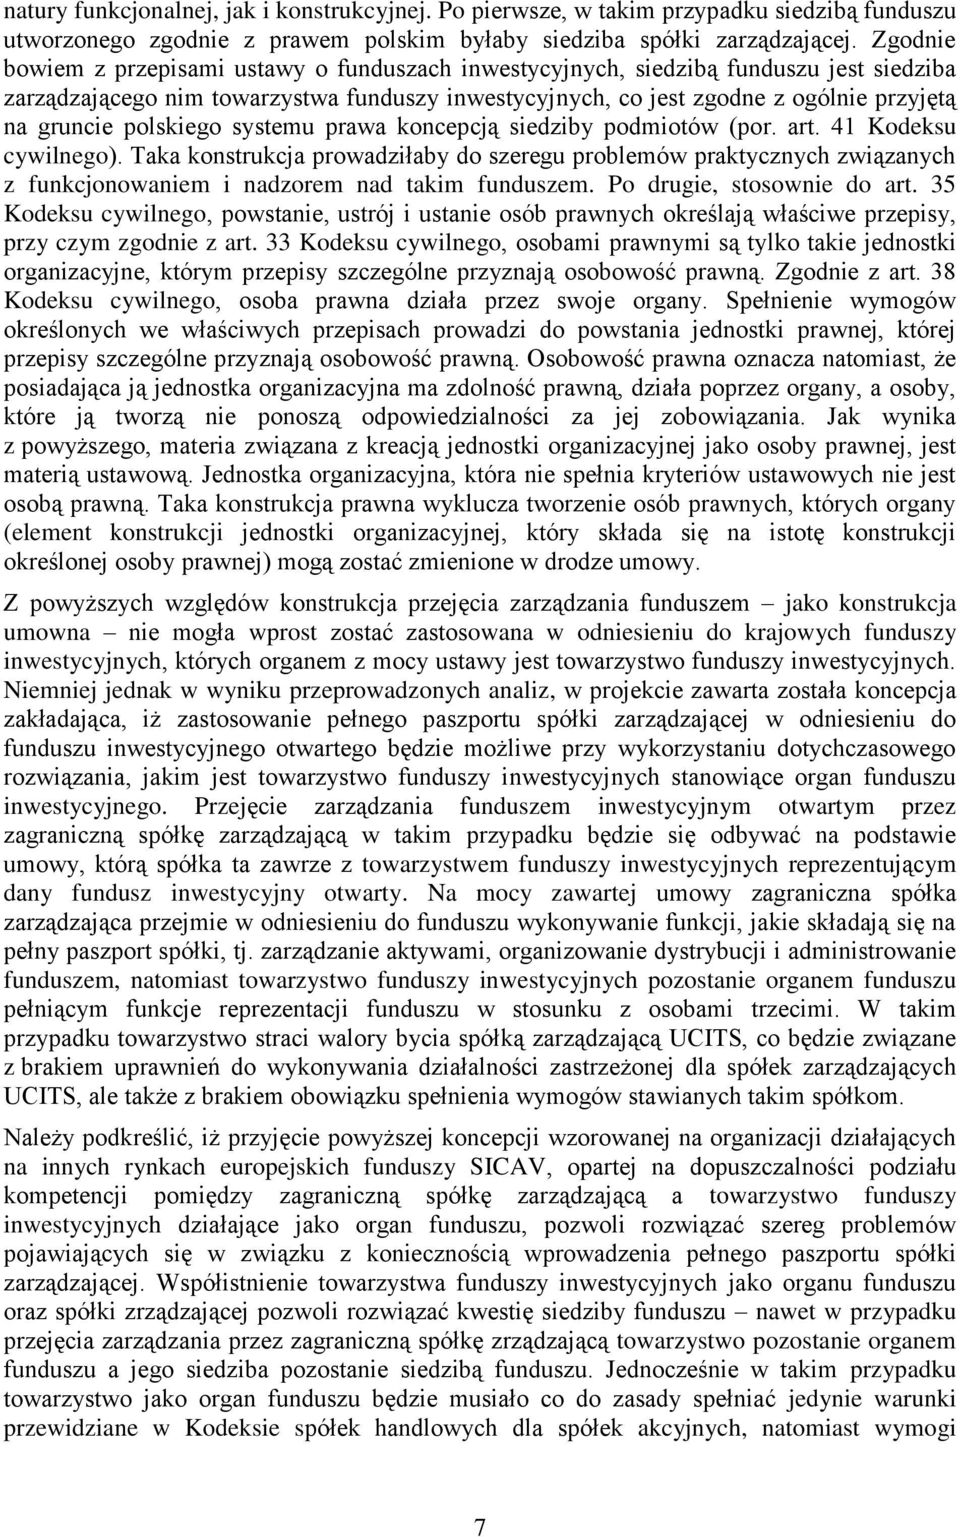 polskiego systemu prawa koncepcją siedziby podmiotów (por. art. 41 Kodeksu cywilnego).